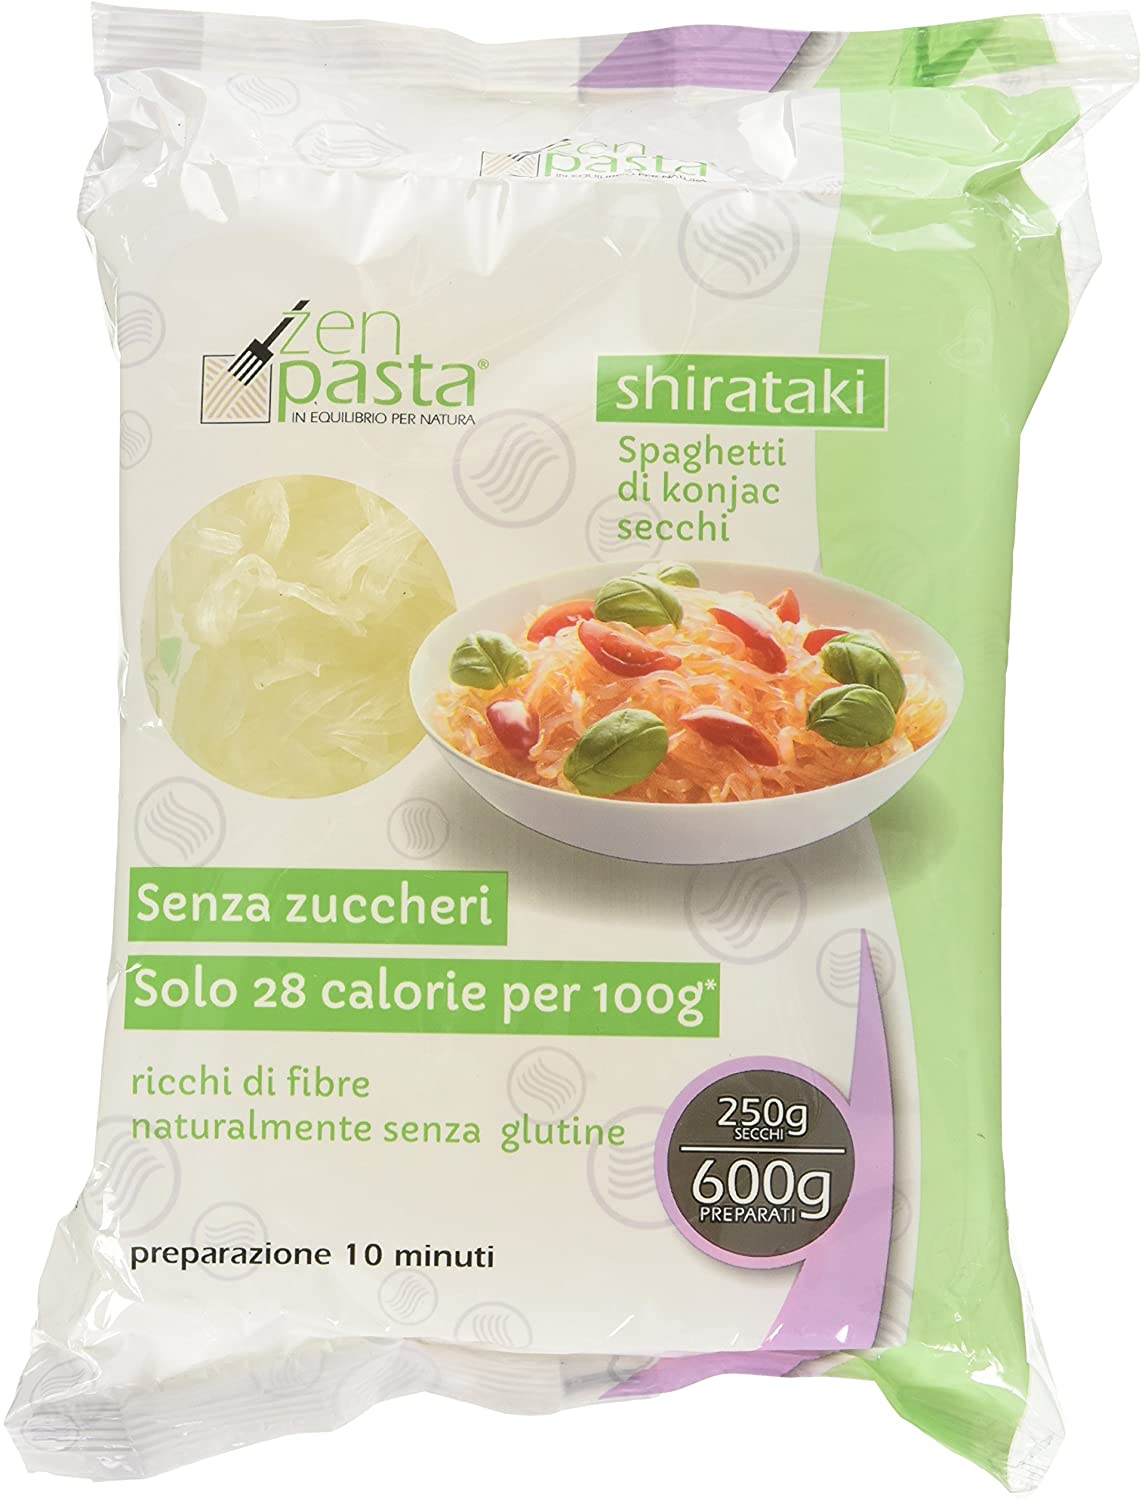 Zenpasta Shirataki Essiccati Formato Spaghetti - 250 Gr